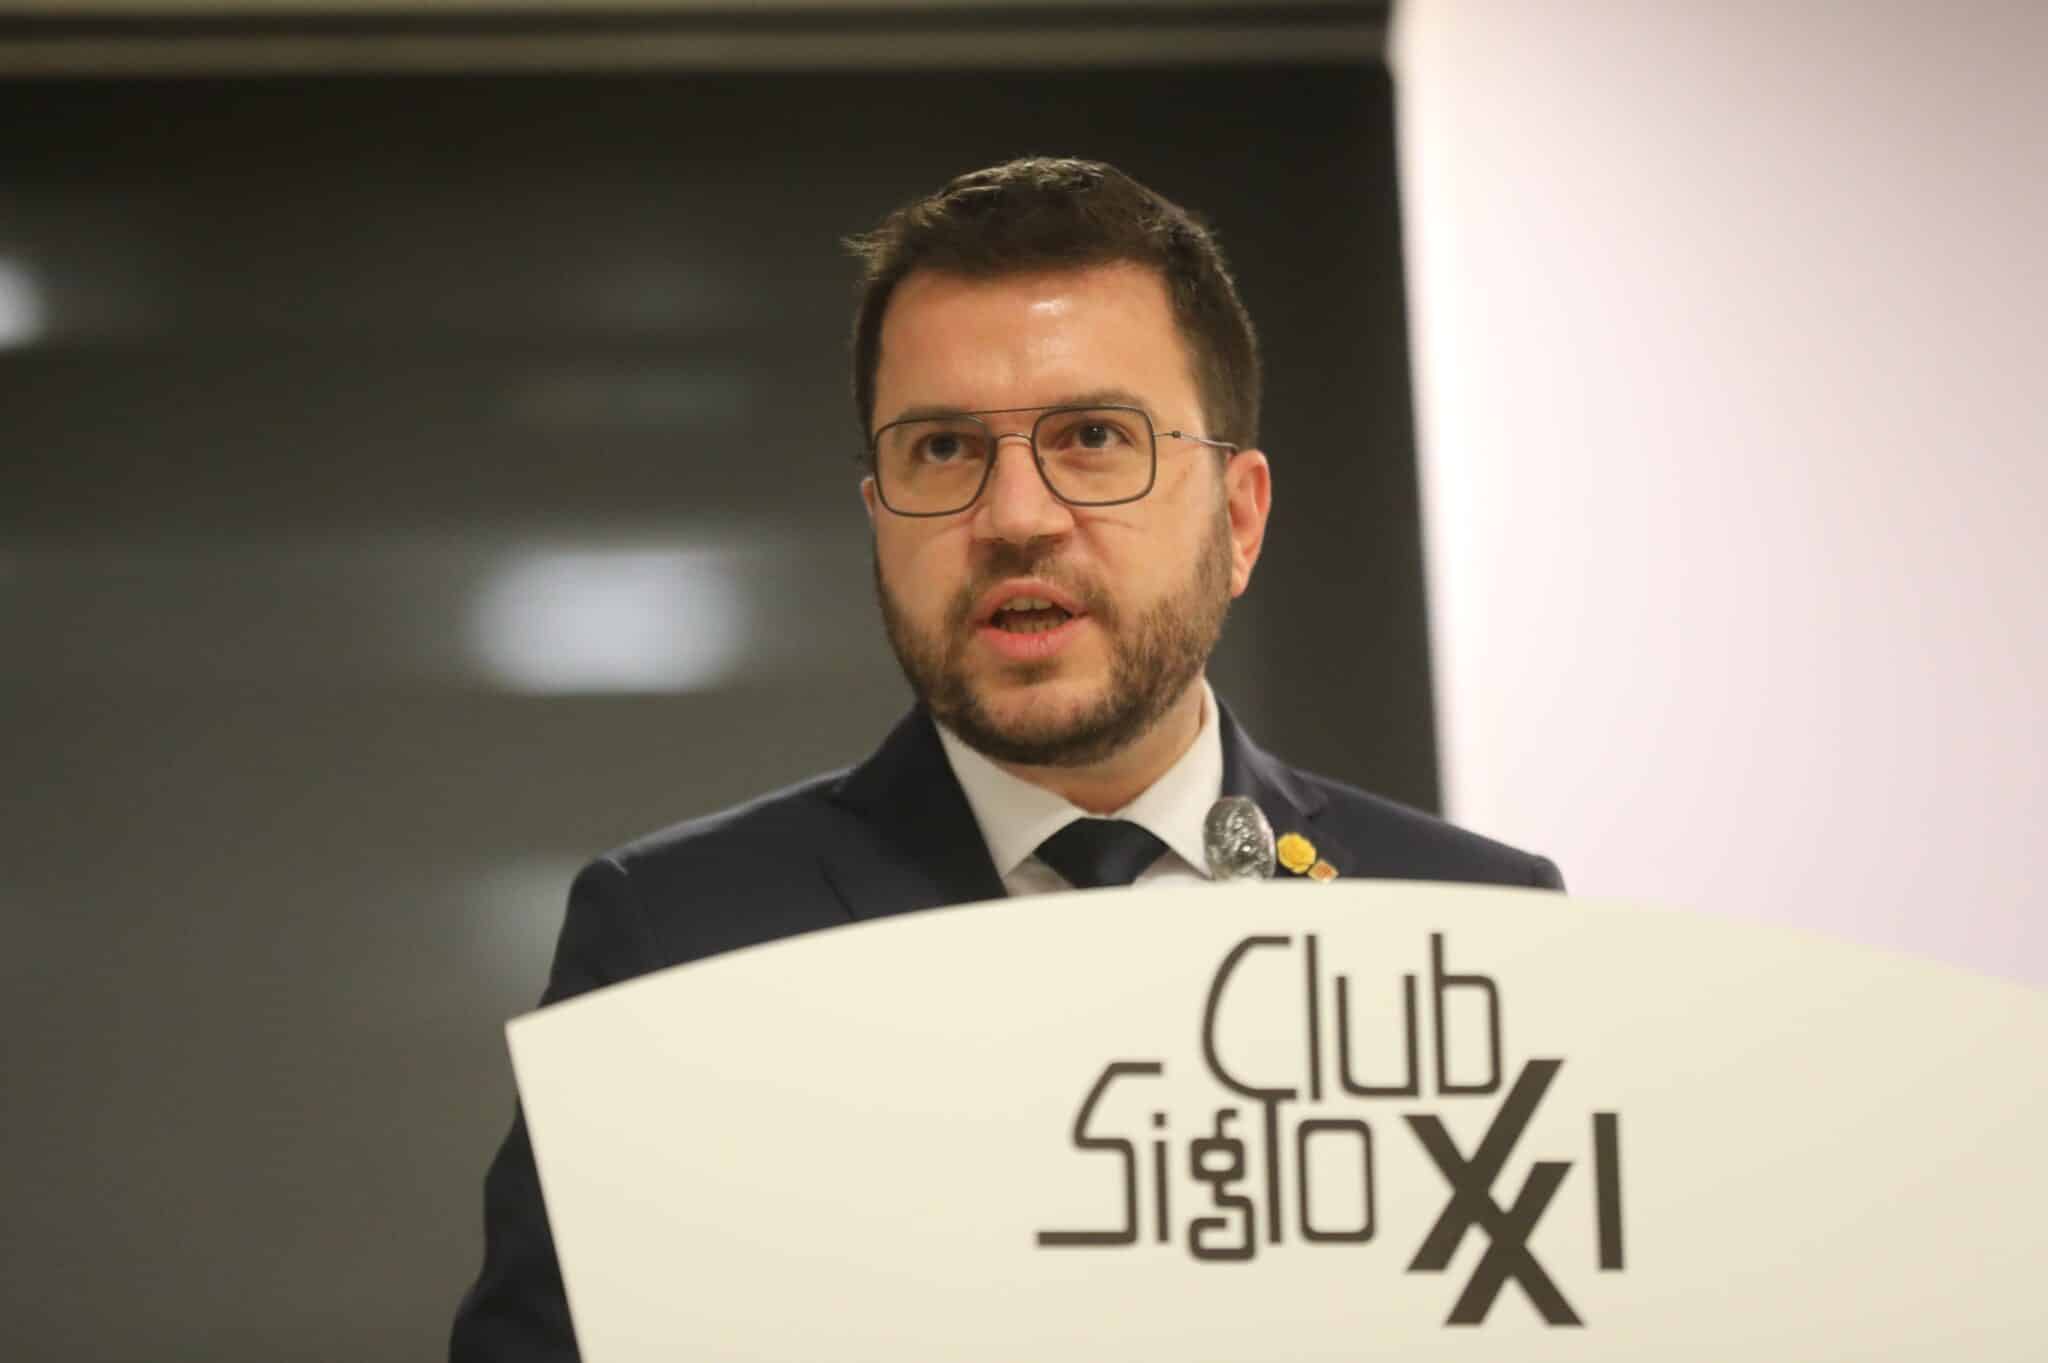 El presidente de la Generalitat de Cataluña, Pere Aragonès, protagoniza un coloquio organizado por el Club Siglo XXI.